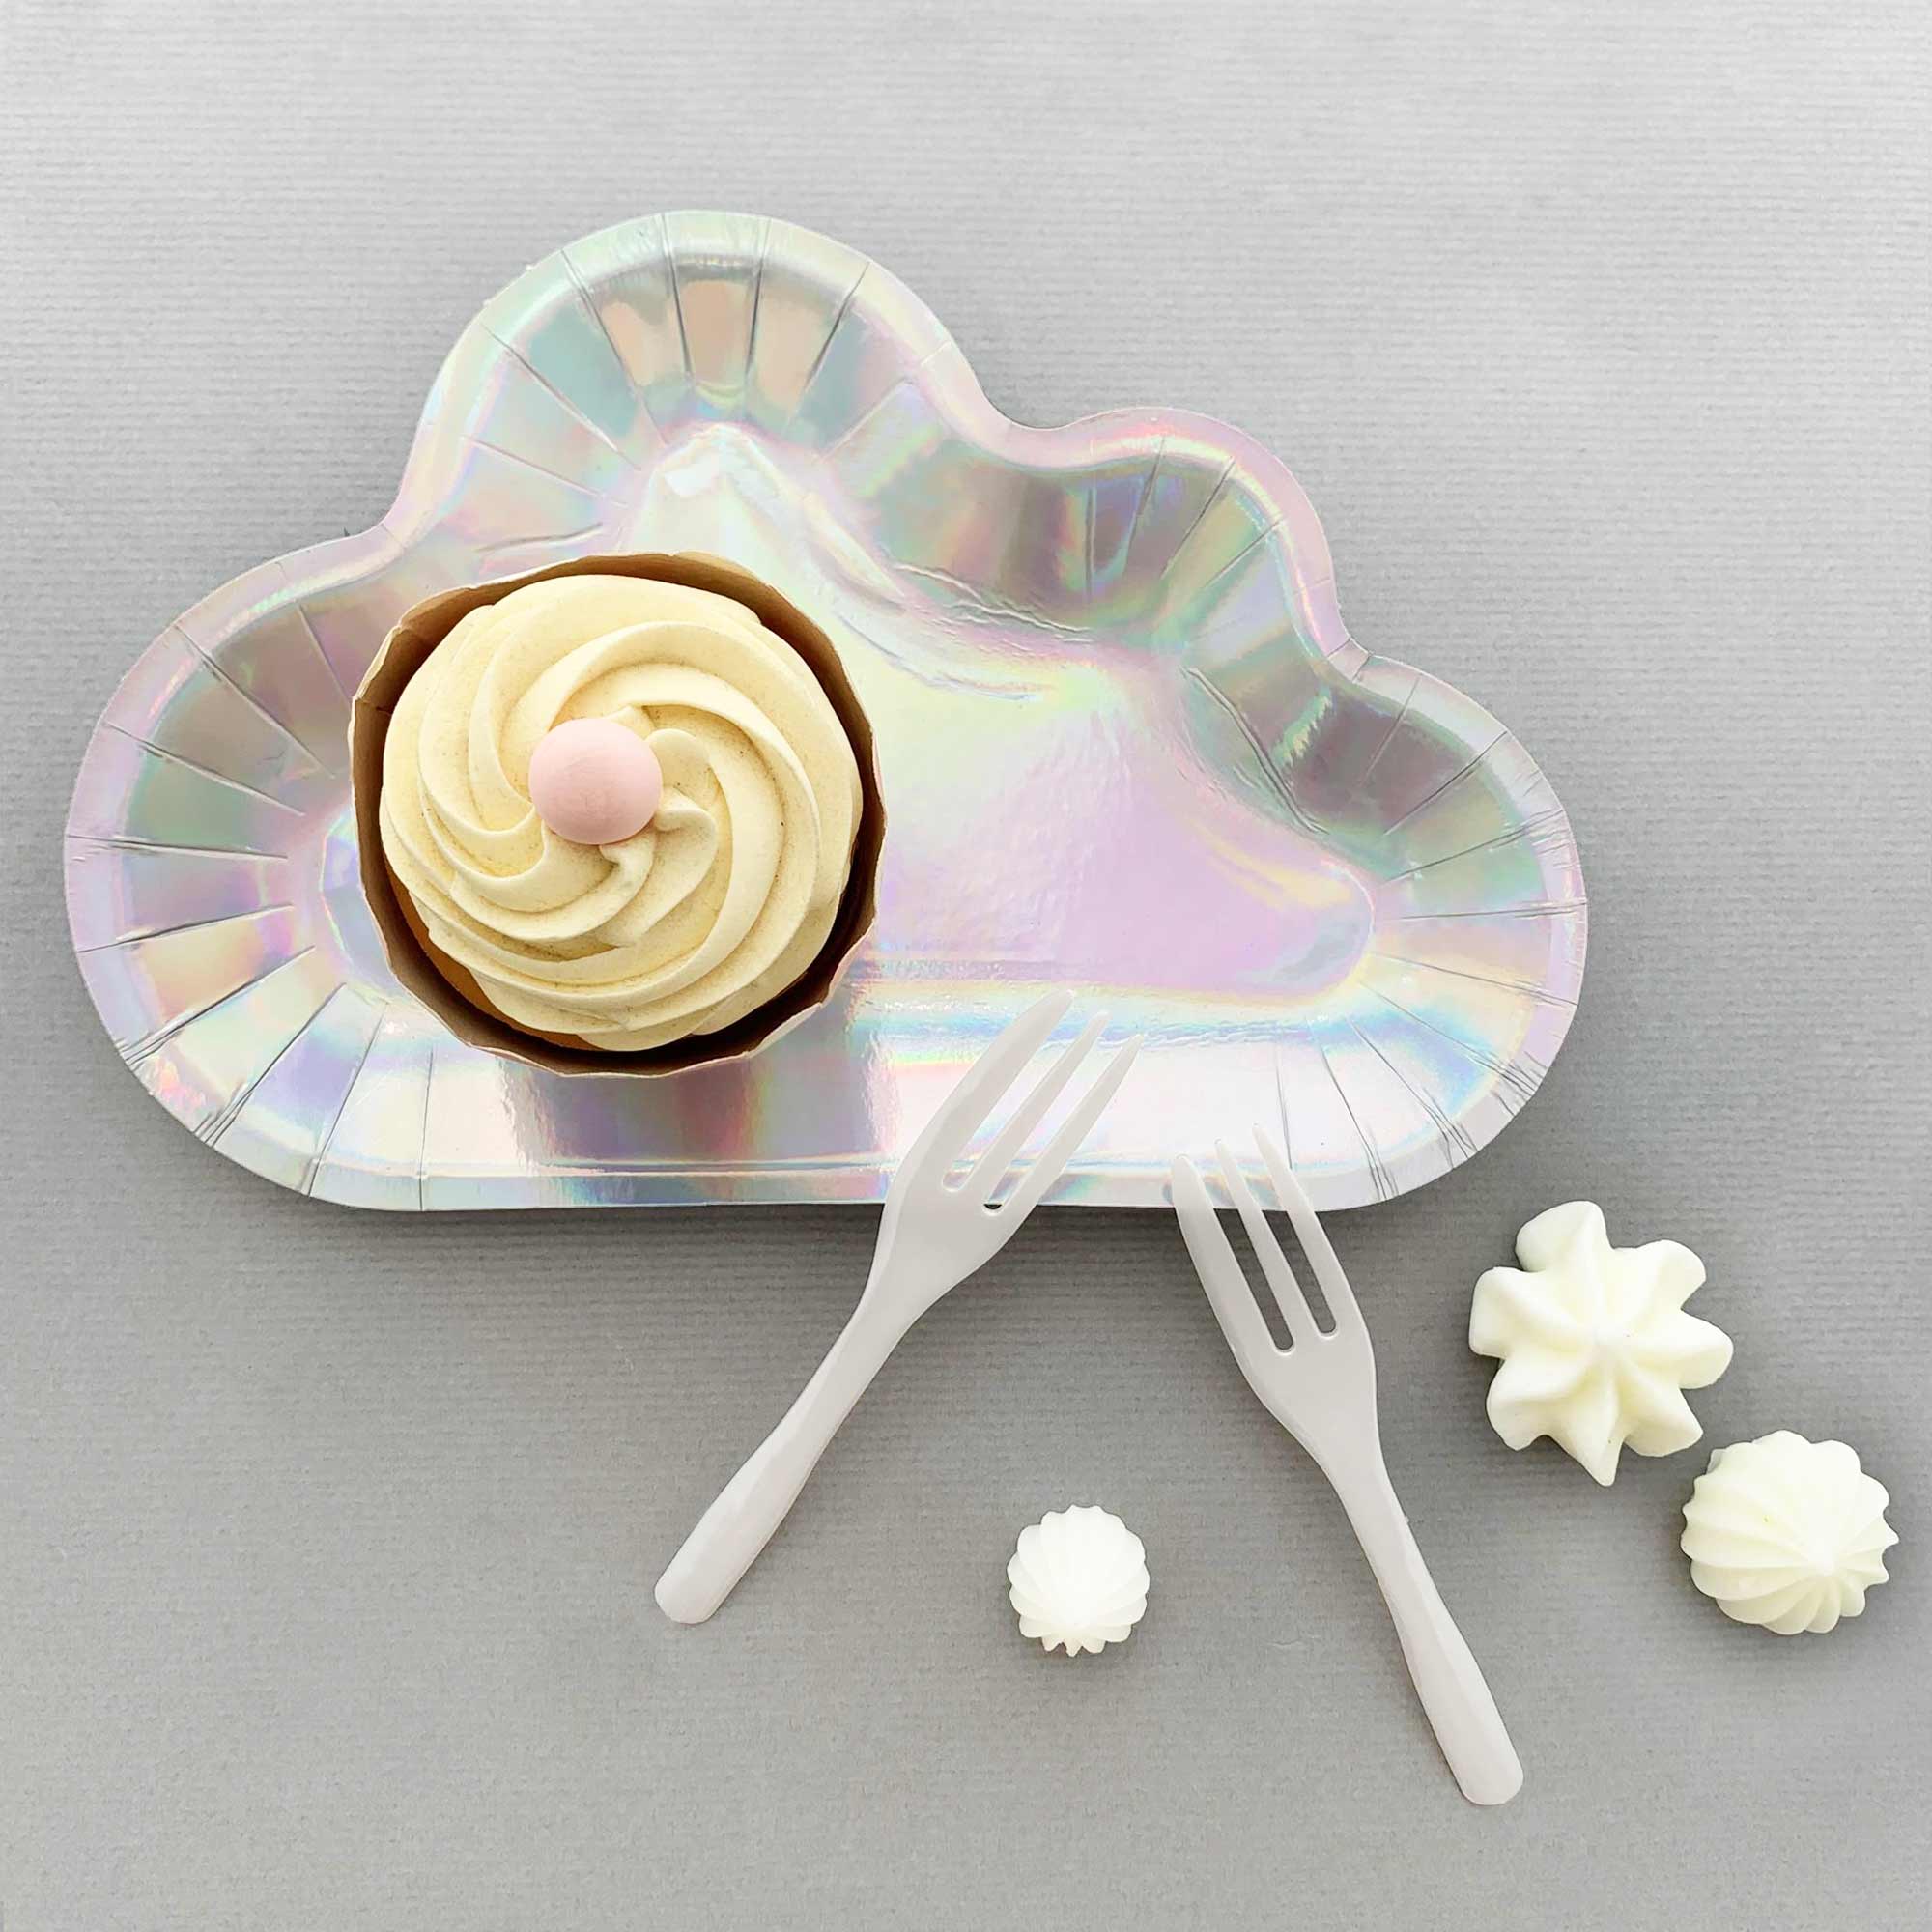 閃亮雲朵蛋糕盤叉組適合天空主題生日派對，快用閃亮雲朵盤點亮你的餐桌吧